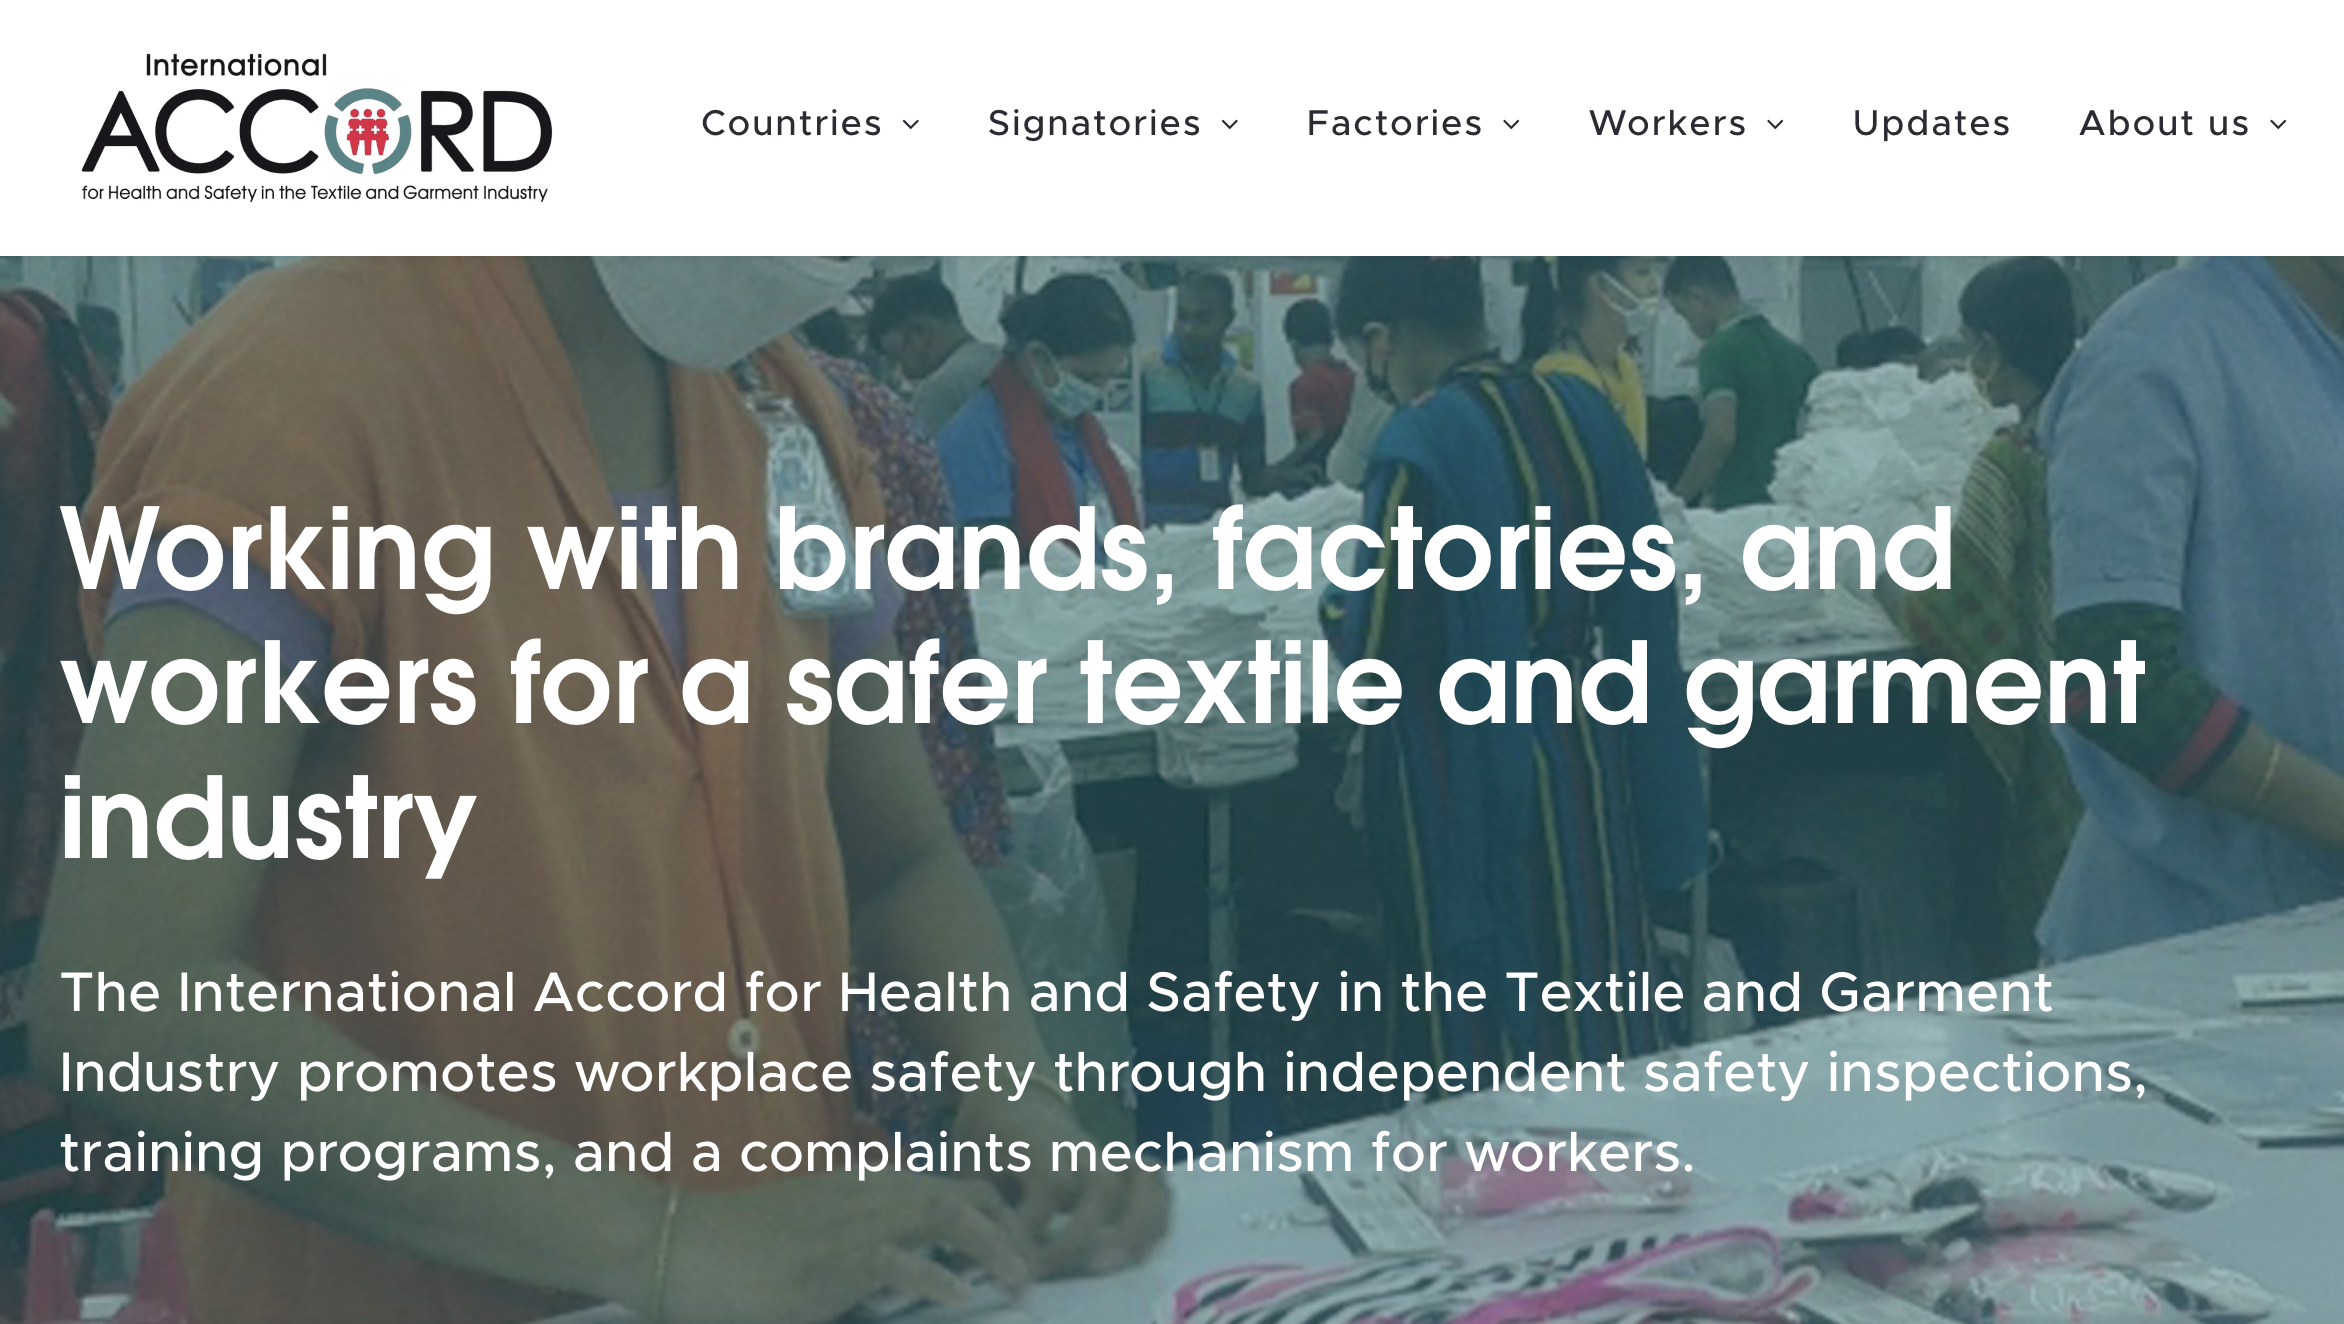 国际和谐基金会：200家品牌已签署《国际纺织服装行业健康与安全协议》